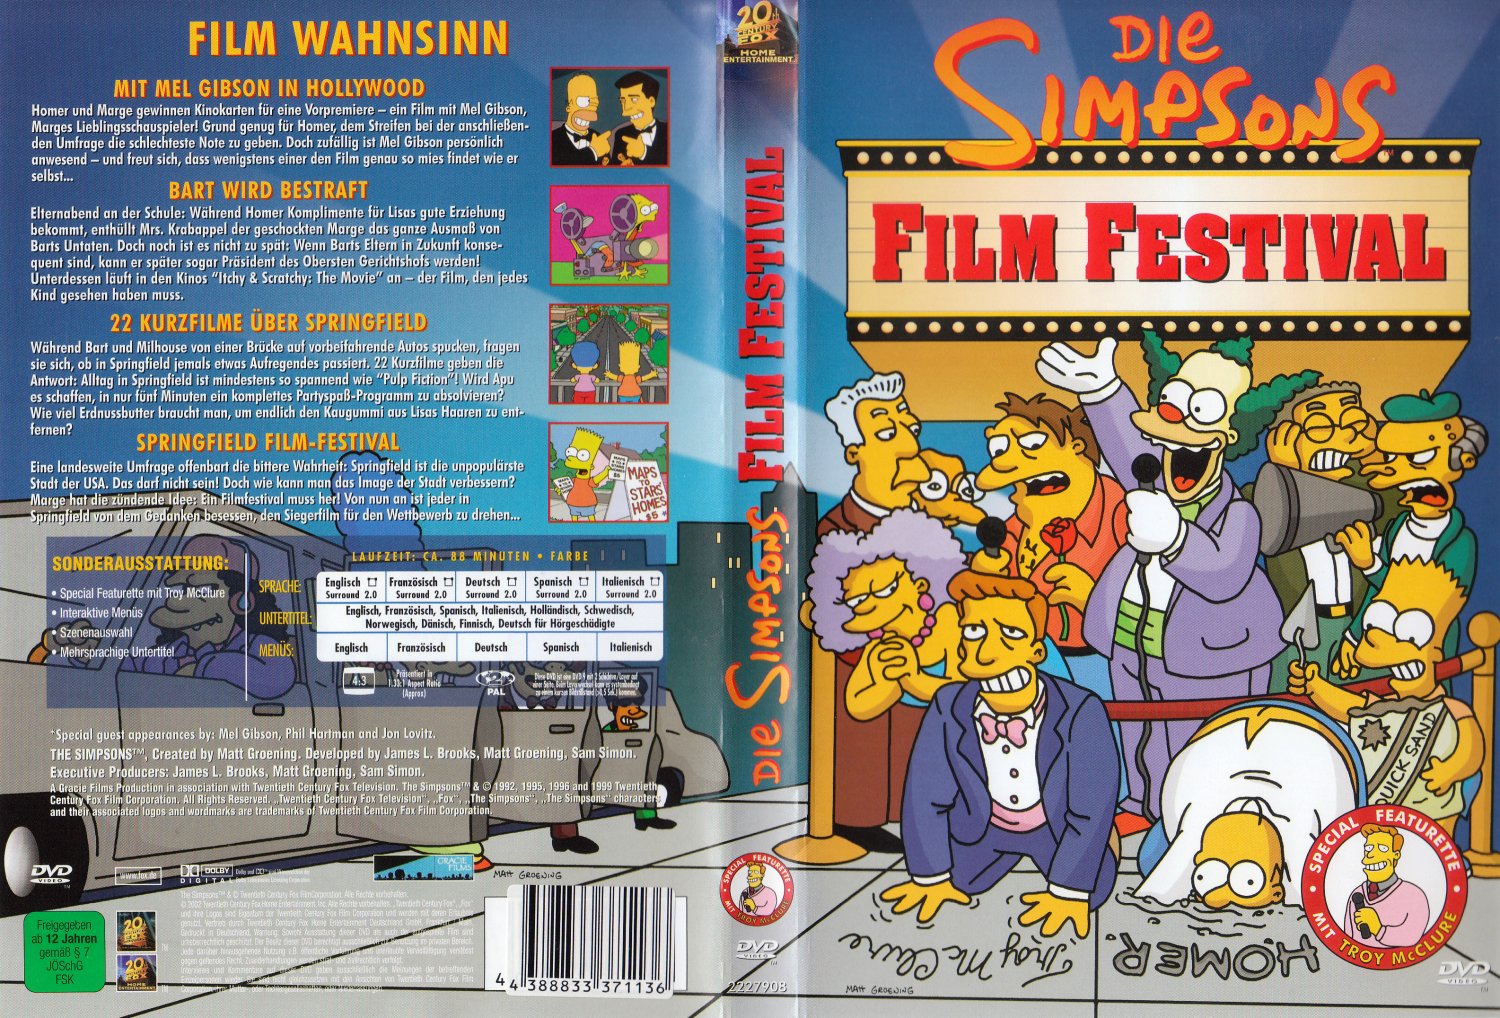 Die Simpsons - Film Festival“ (Matt Groening) – Film gebraucht kaufen –  A02mWXbs11ZZ0